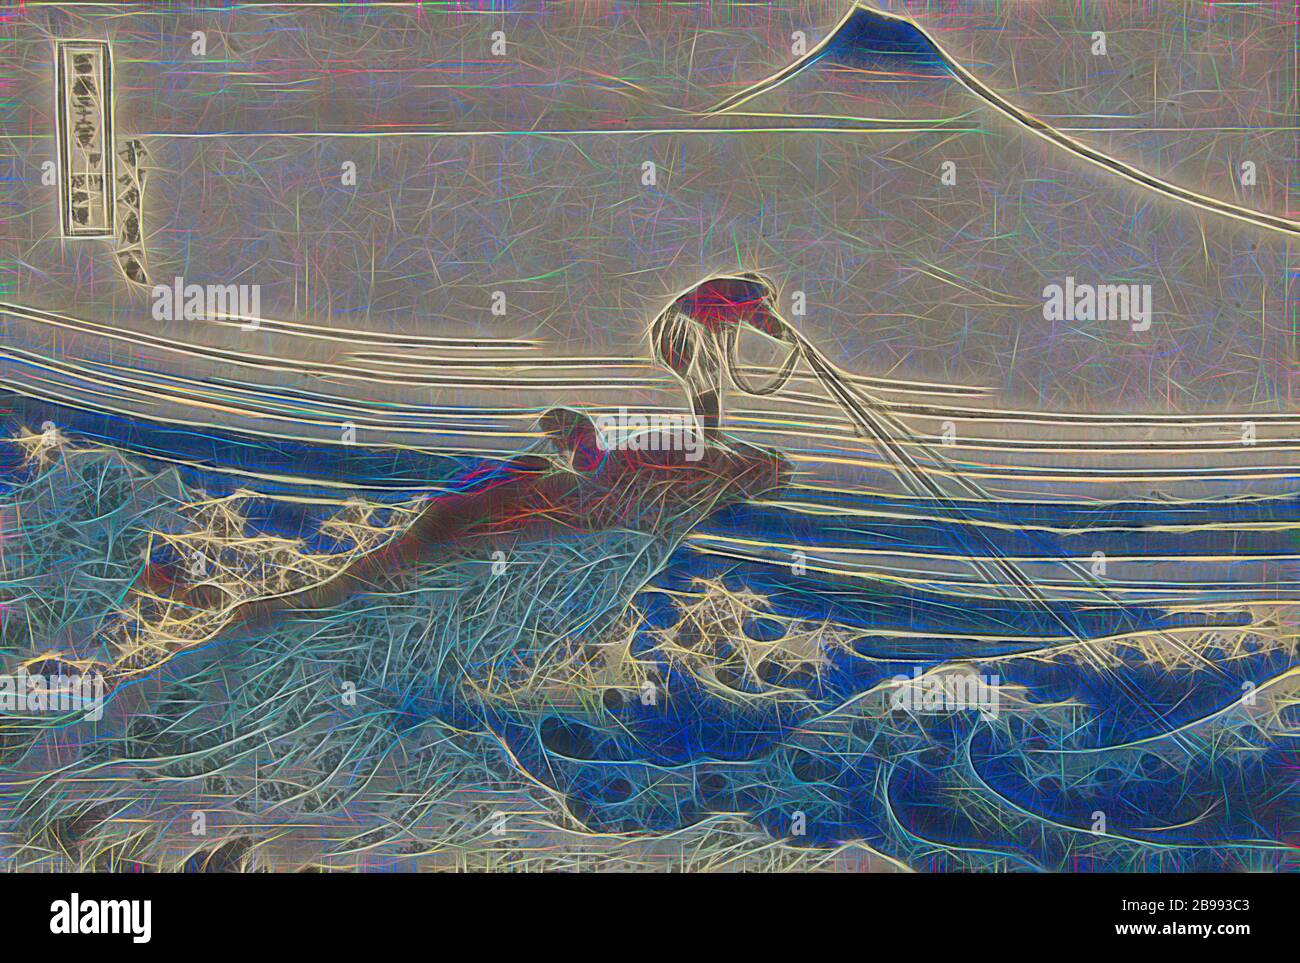 Kajikasawa in Kai Koshu Provinz Kajikasawa (Titel auf Objekt) 36 Ansichten des Fuji (Serientitel) Fuji sanjurokkei (Serientitel auf Objekt), EIN Fischer auf einem, über einem turbulenten Meer hängend auf Felsen, ein Junge sitzt neben ihm, Berg Fuji im Hintergrund steigt über Nebelbänke., Fuji, Der Berg, Katsushika Hokusai (auf Objekt erwähnt), 1829 - 1833, Papier, Farbholzschnitt, H 249 mm × B 368 mm, neu gestaltet von Gibon, Design von warmen fröhlichen Leuchten der Helligkeit und Lichtstrahlen Ausstrahlung. Klassische Kunst neu erfunden mit einem modernen Twist. Fotografie inspiriert von Futurismus, umarmt dynamische Energie o Stockfoto